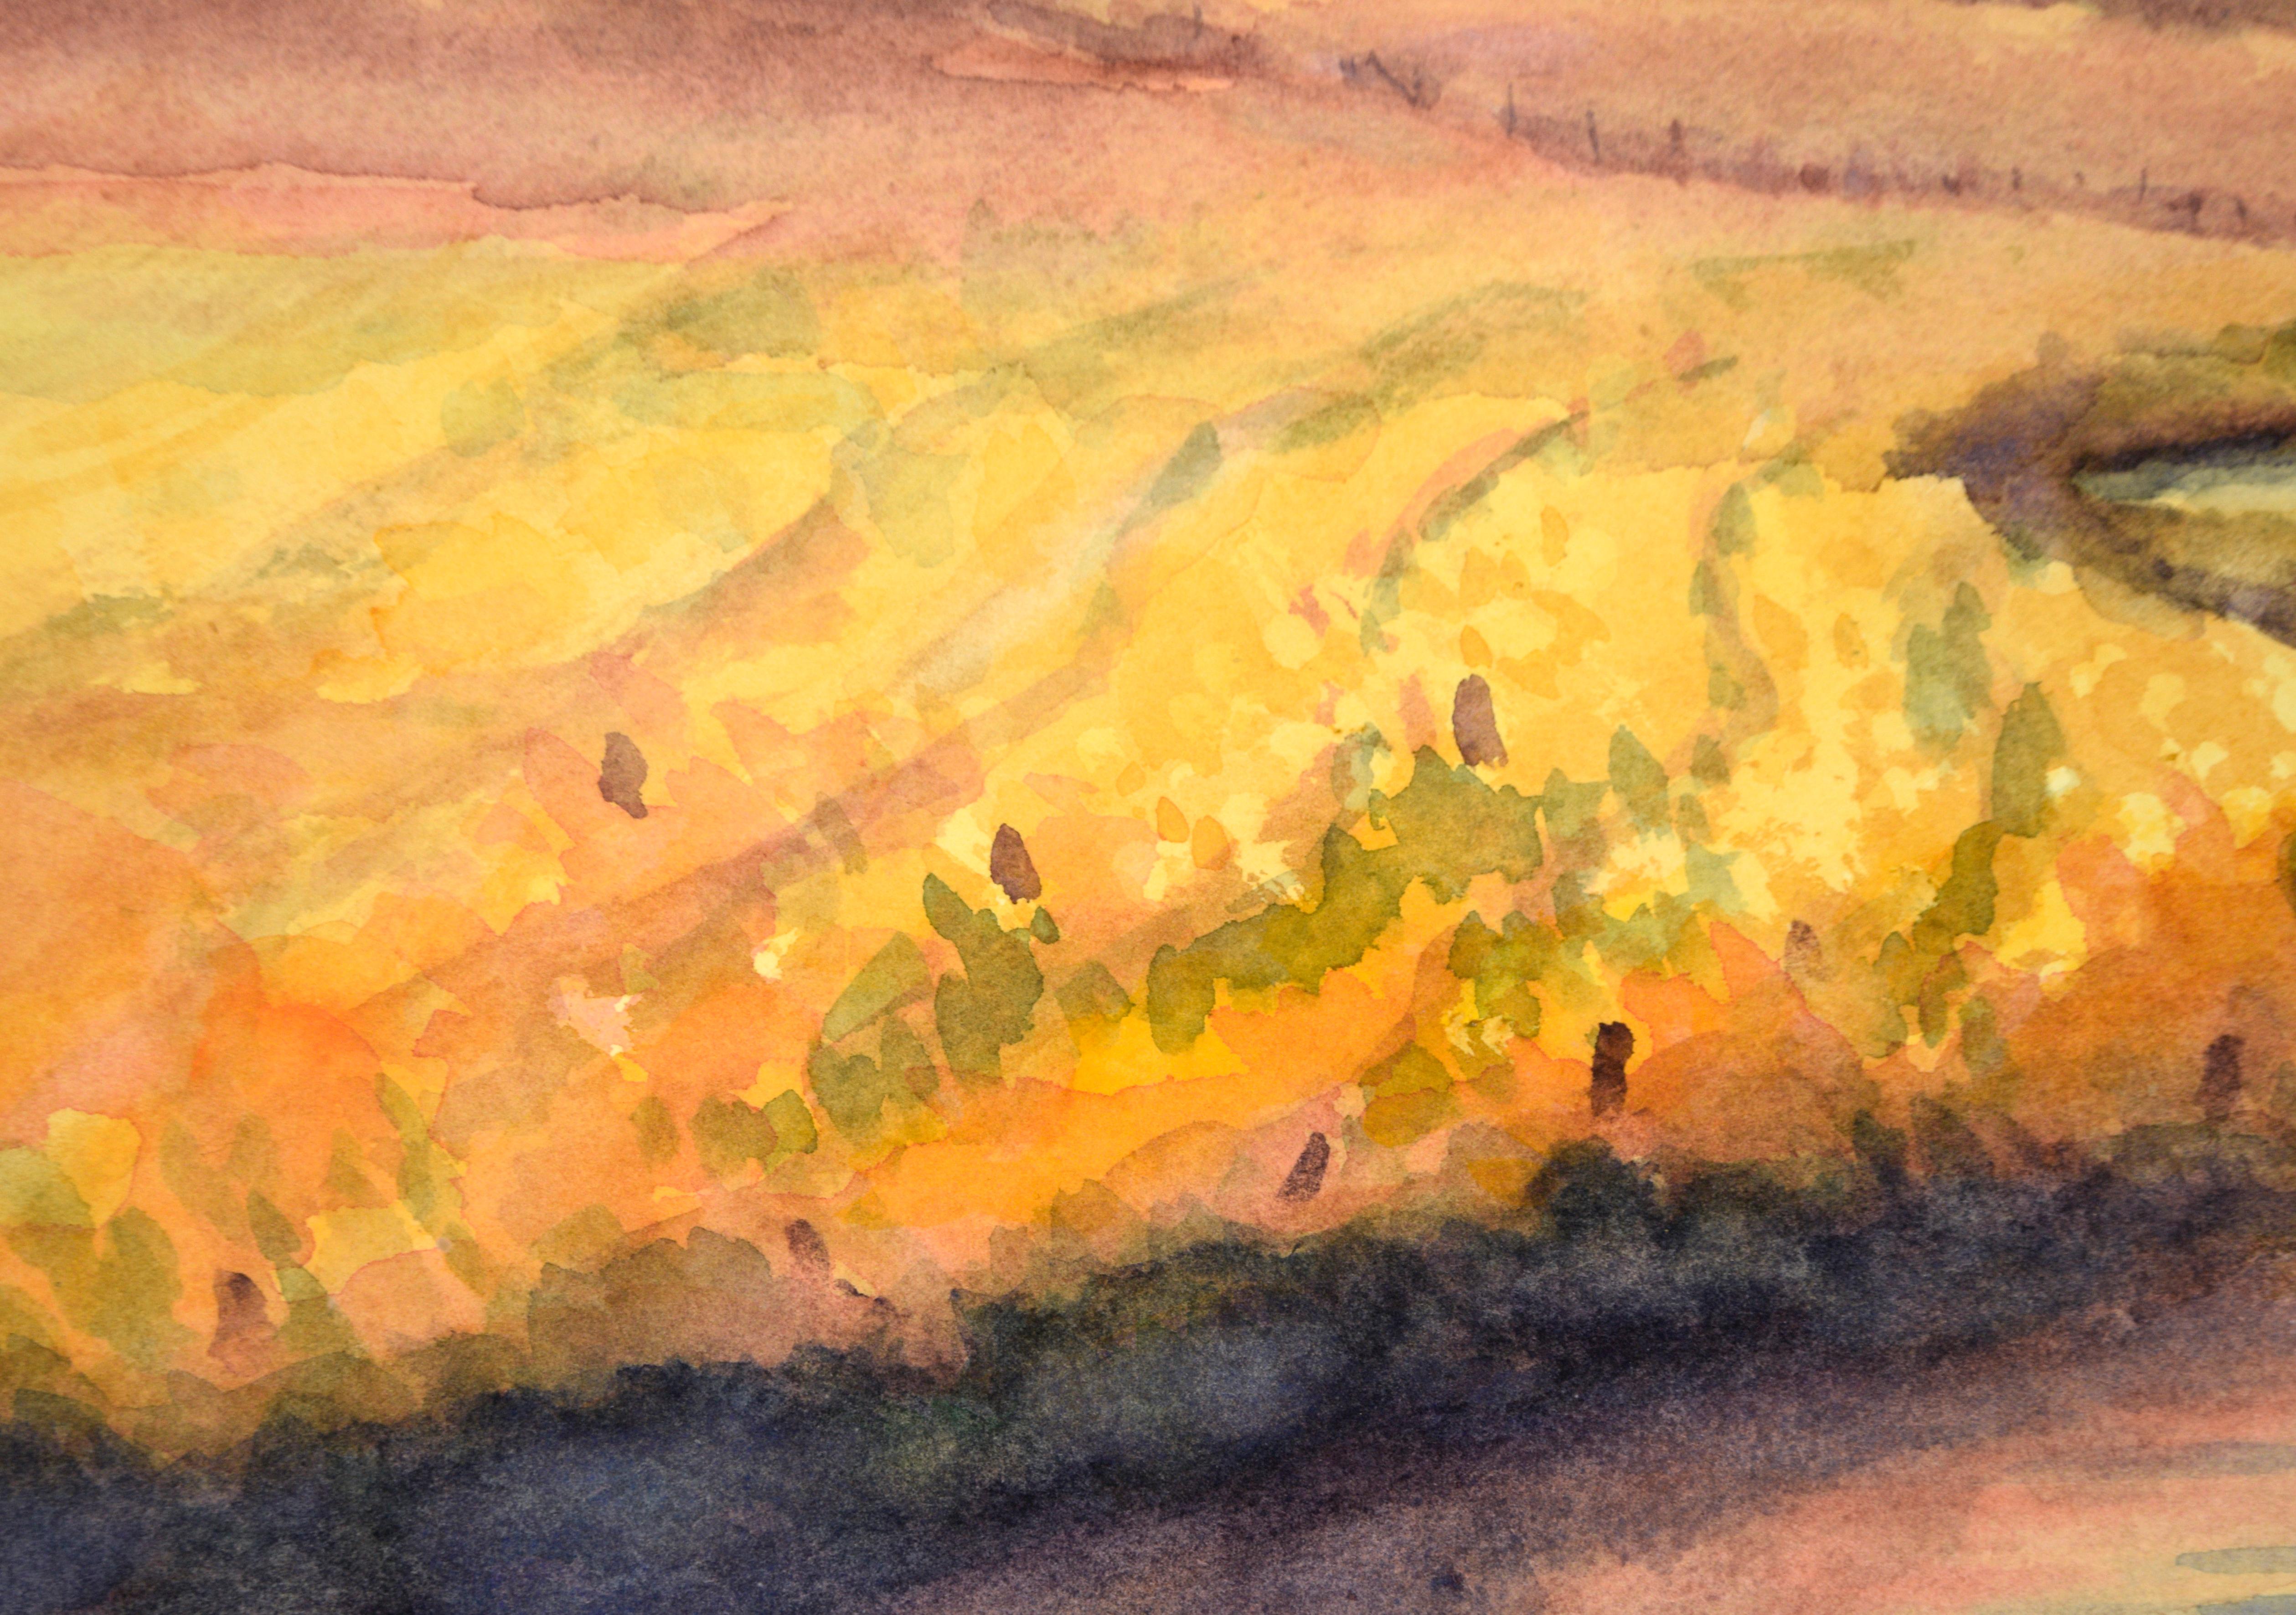 Golden Hour at the River (Gold Hour at the River) - paysage à l'aquarelle sur papier

Paysage de coucher de soleil lumineux de Rosalind O'Neal (américaine, née en 1927). Une rivière serpente vers le spectateur, reflétant le coucher de soleil